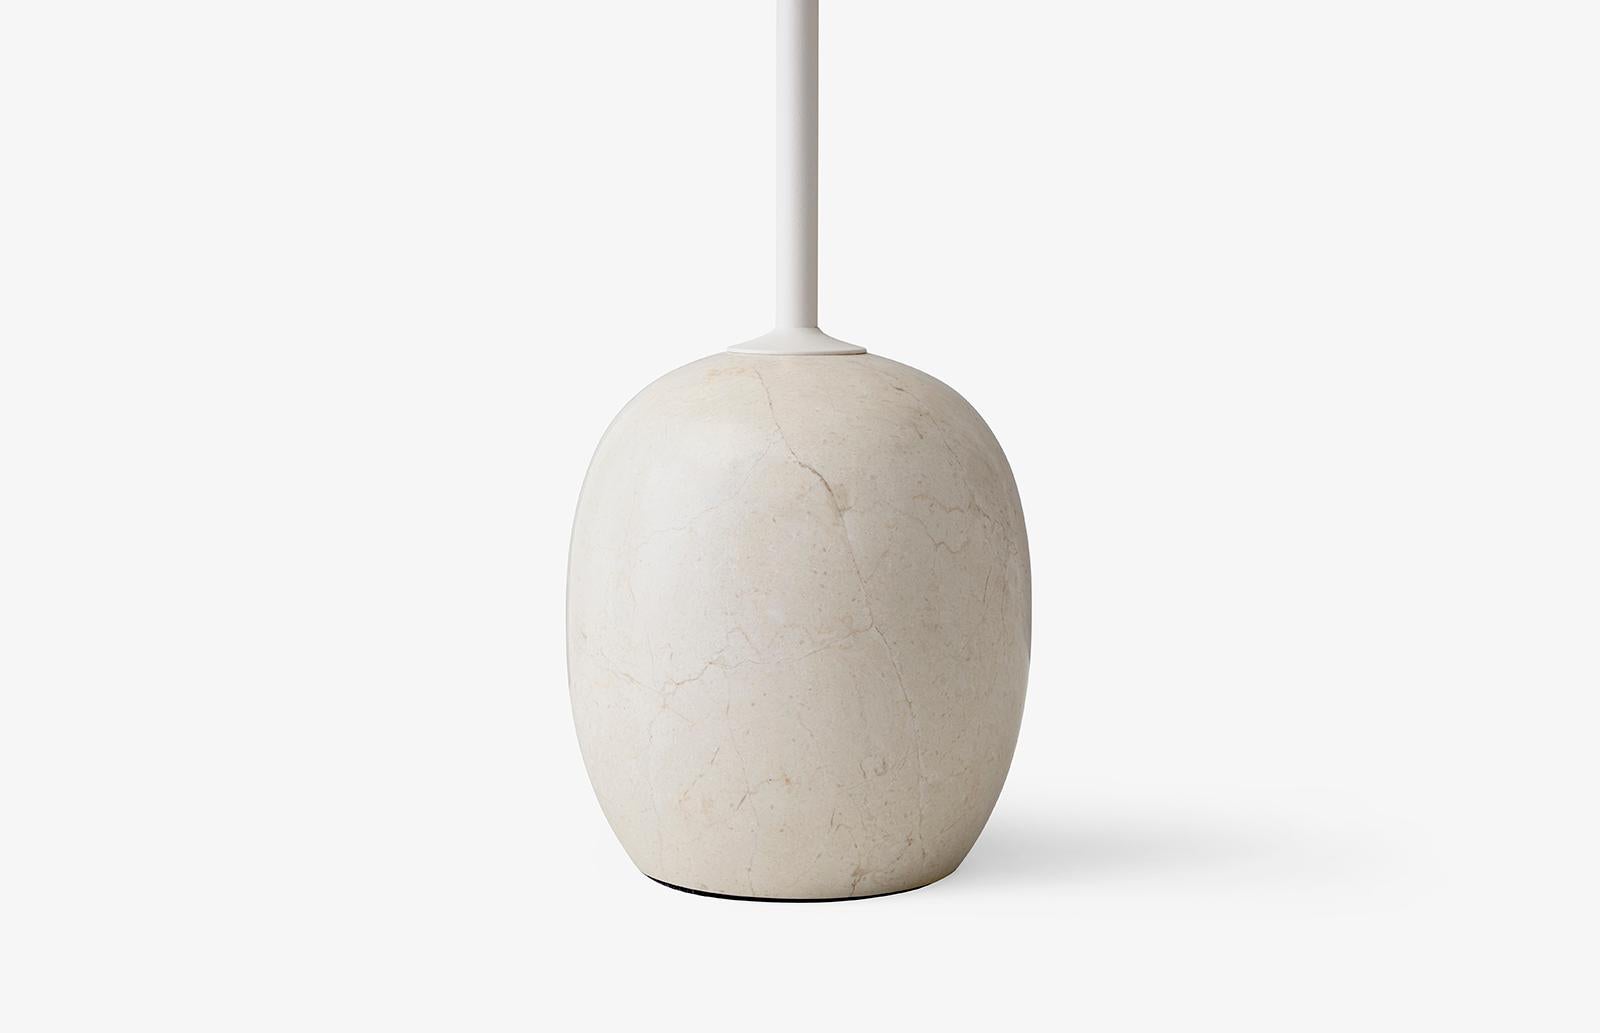 À première vue, Lato ressemble à une sculpture, avec son mince plateau rond équilibré par une base de forme ovale. 
Le marbre est mis en forme sur une mousse, puis aiguisé pour obtenir une finition semi-mate. 
La table est fabriquée en acier blanc